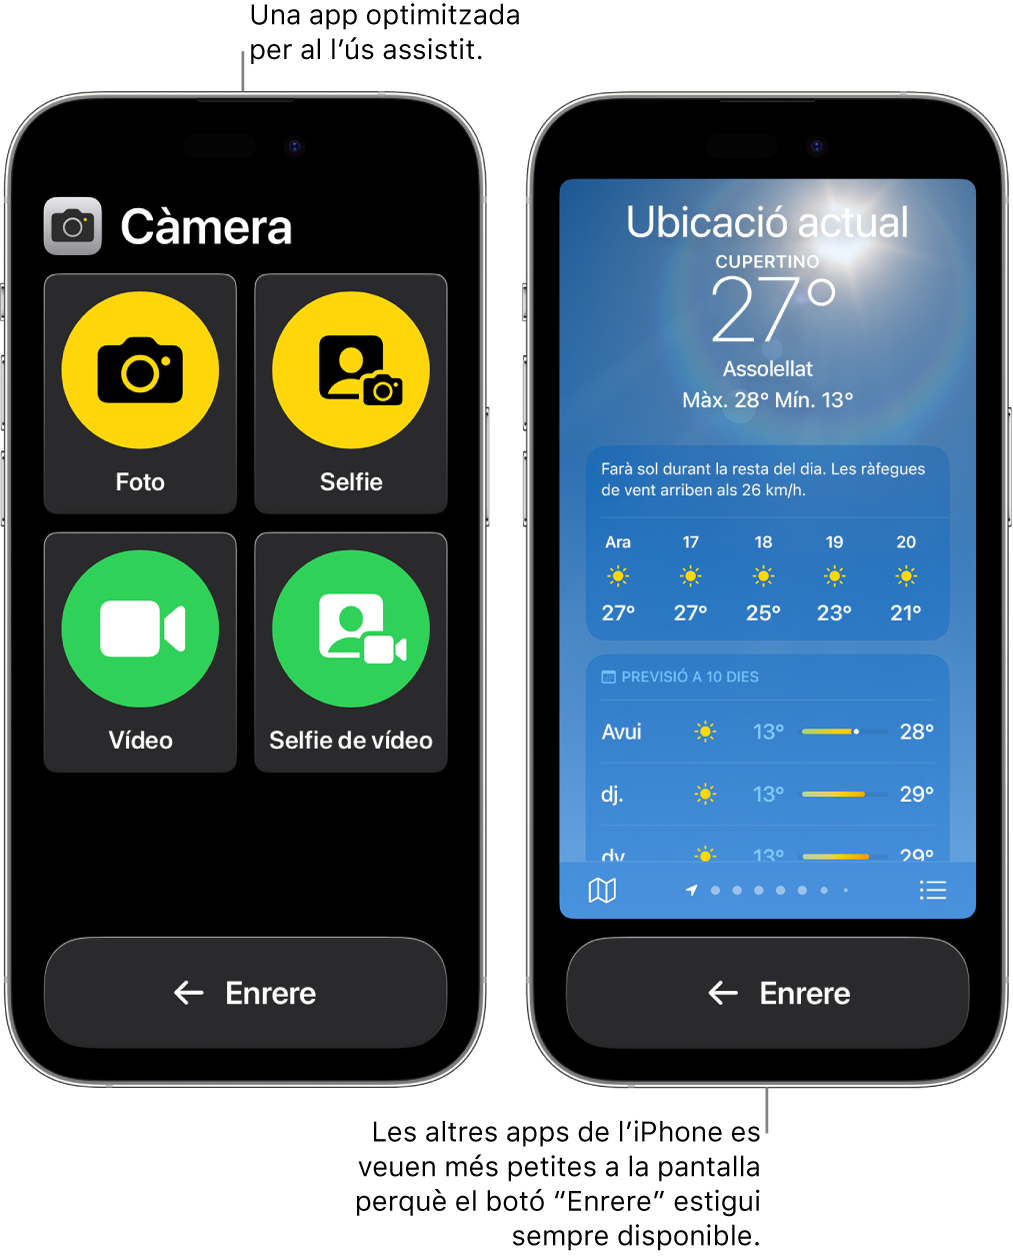 Dos iPhone amb ús assistit. En un iPhone s’hi veu una app dissenyada per a l’ús assistit amb una gran retícula de botons. A l’altre iPhone s’hi veu una app que no està dissenyada per a l’ús assistit amb el seu disseny original. L’app es veu més petita a la pantalla i hi ha un botó “Enrere” gran a la part inferior.